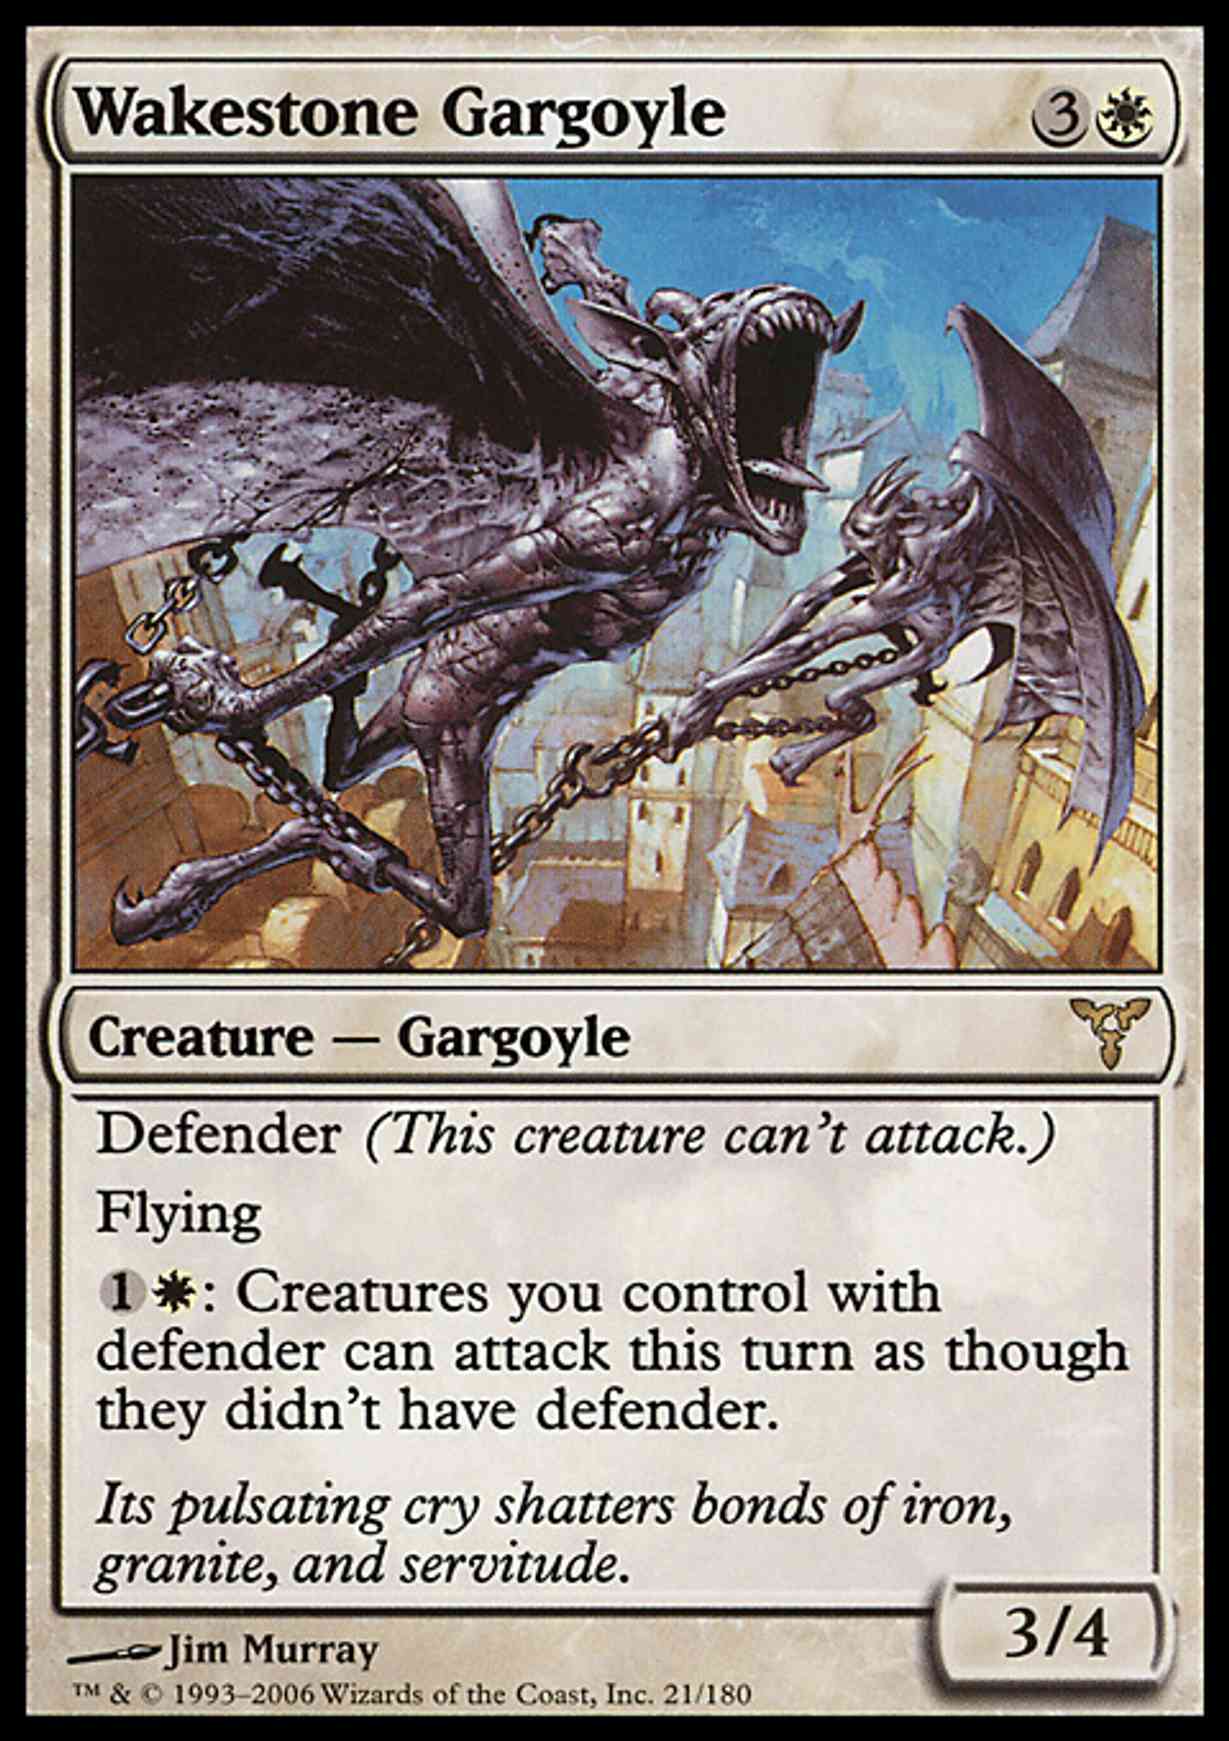 Wakestone Gargoyle magic card front